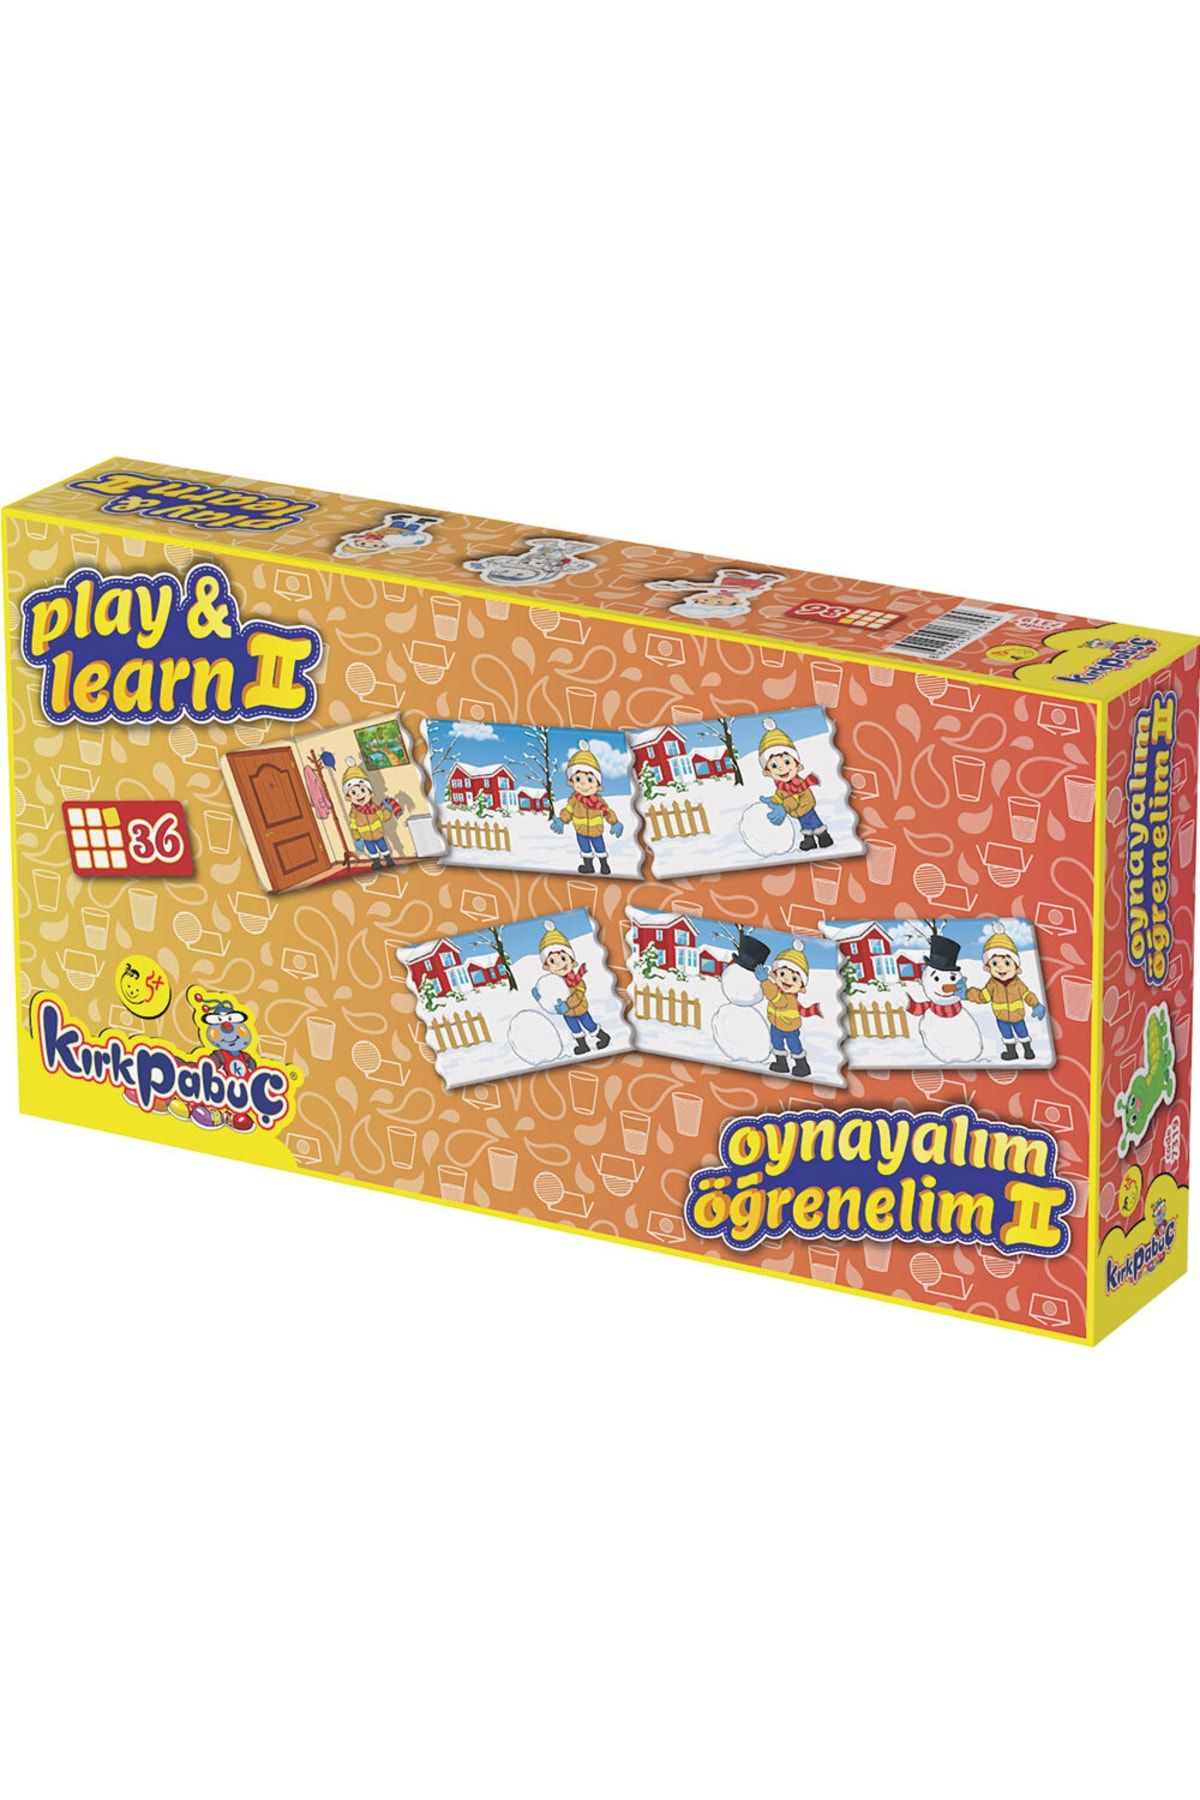 Kırkpabuç Puzzle Eğitici Ve Öğretici Oynayalım Öğrenelim Eğitici Çocuk Oyunu